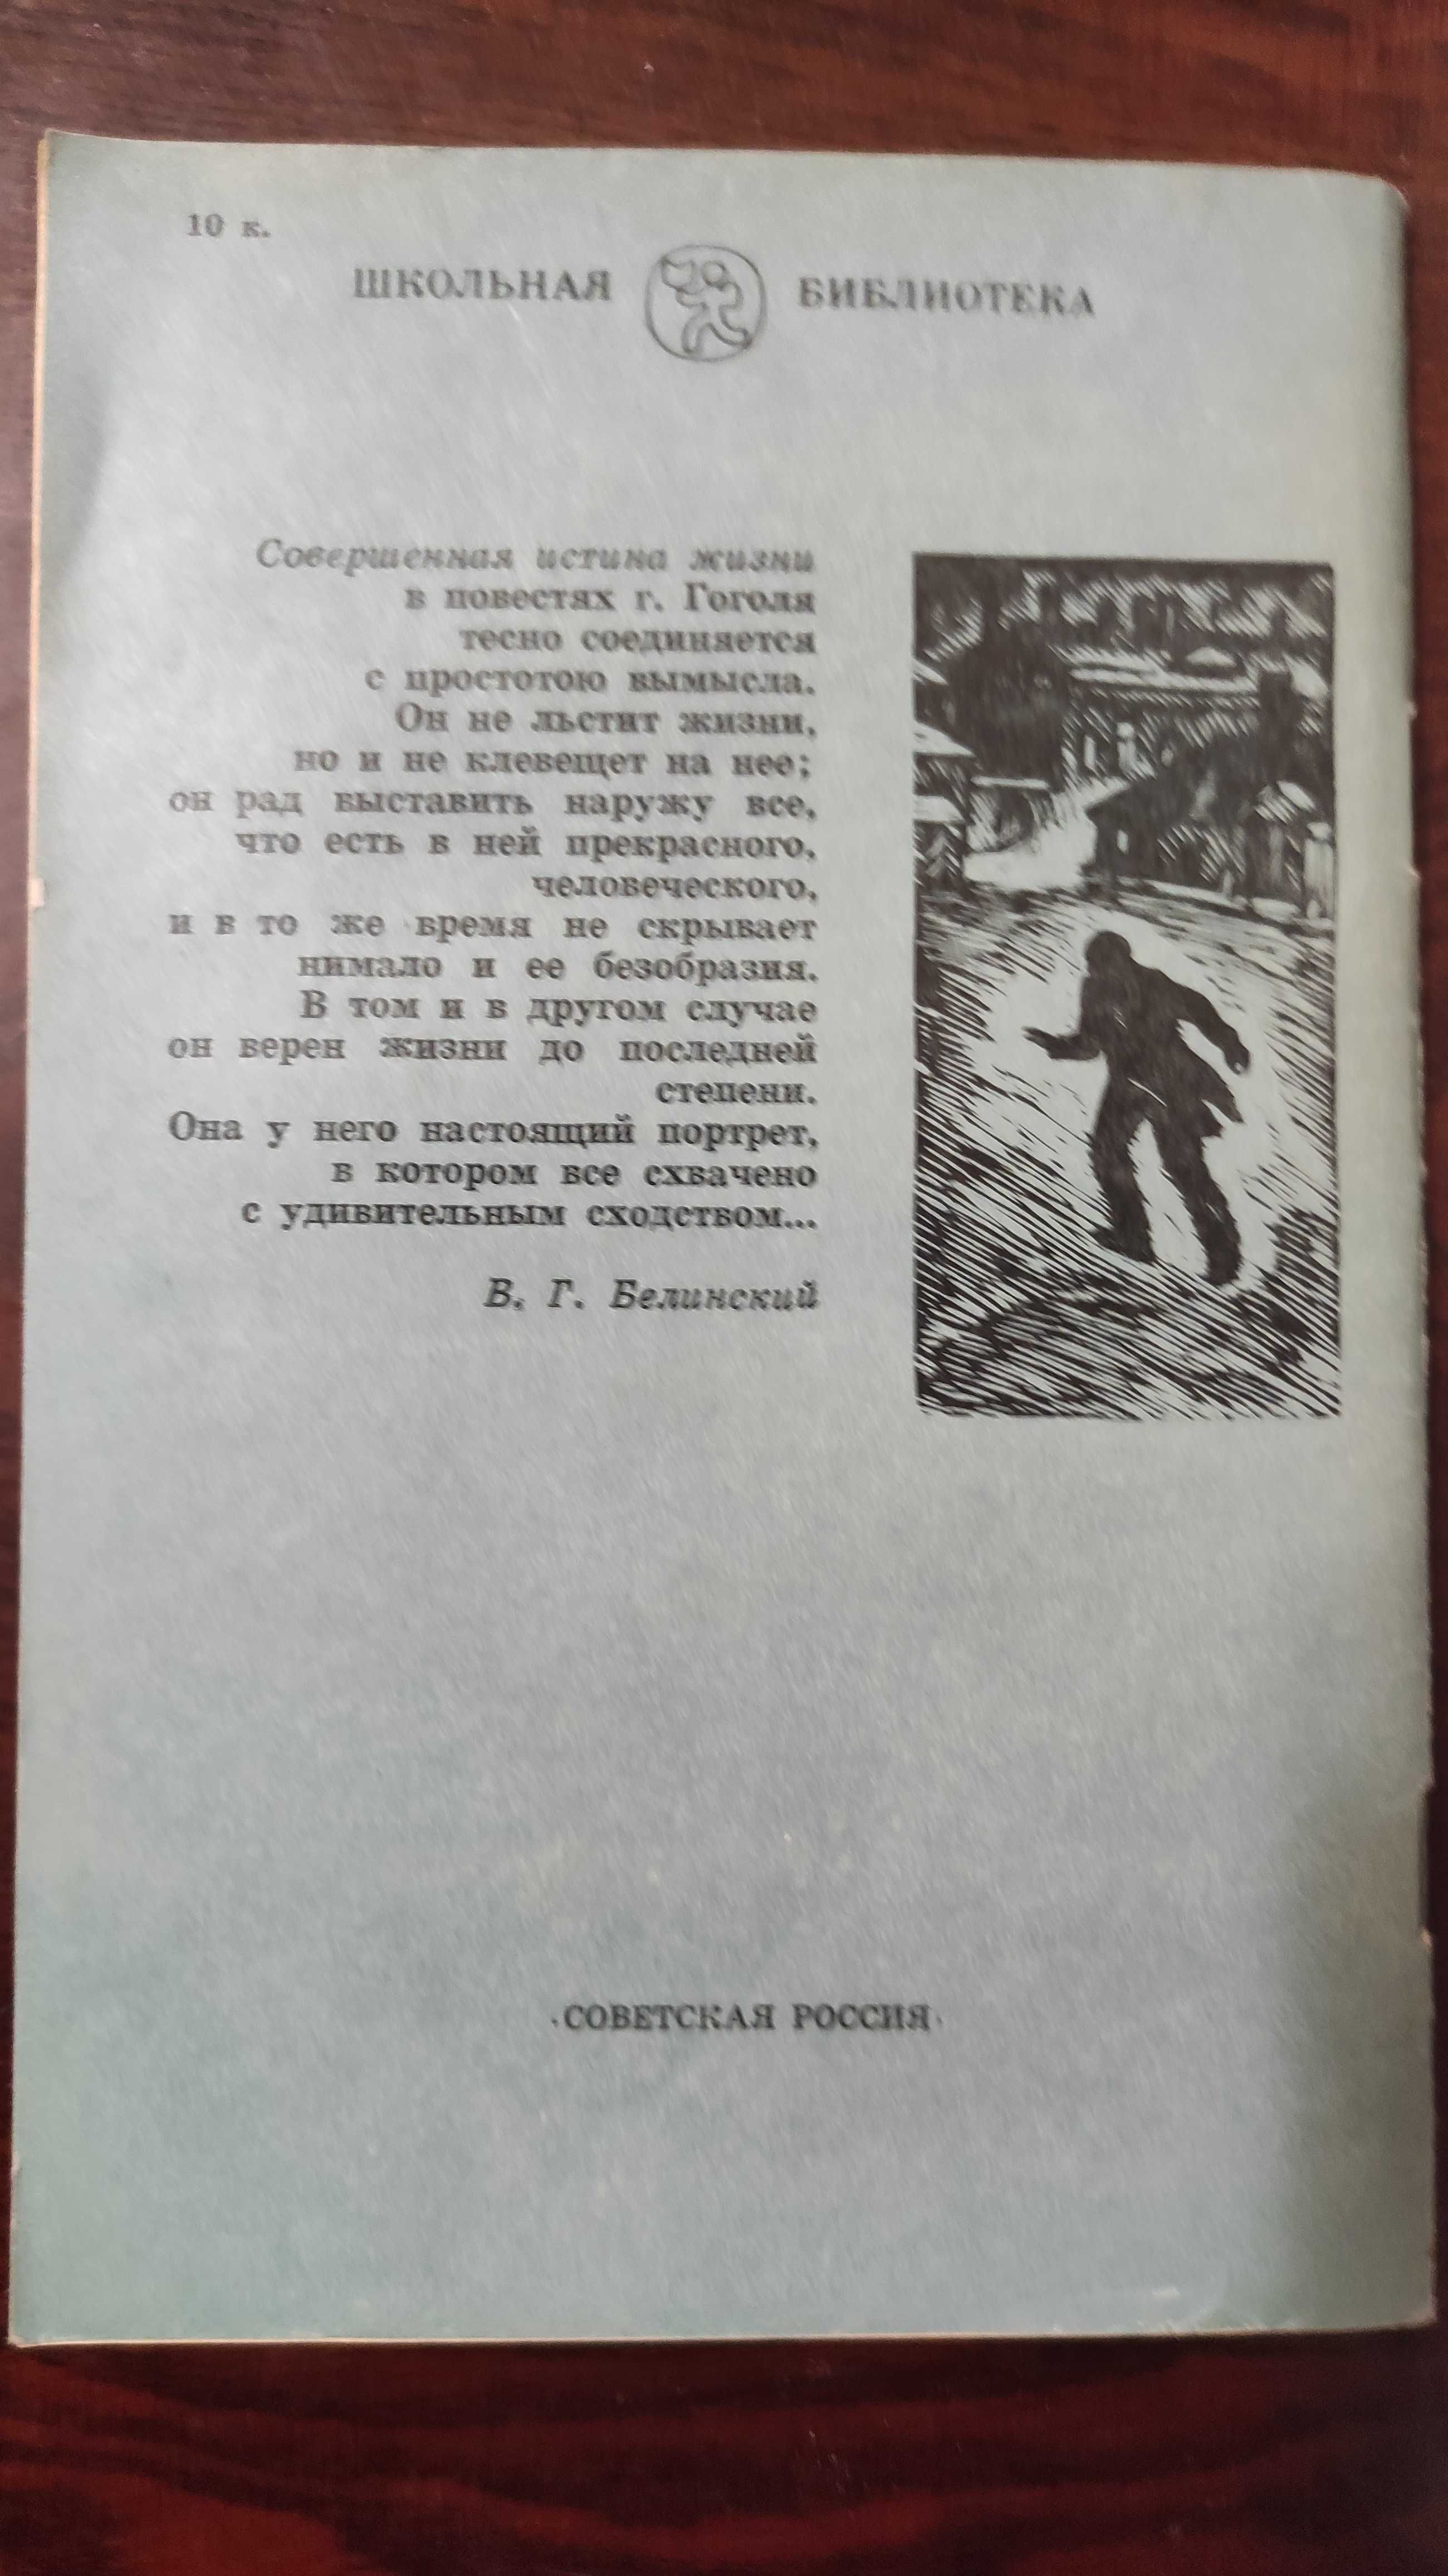 Книга Н. В. Гоголя  "Шинель"  1982 г.